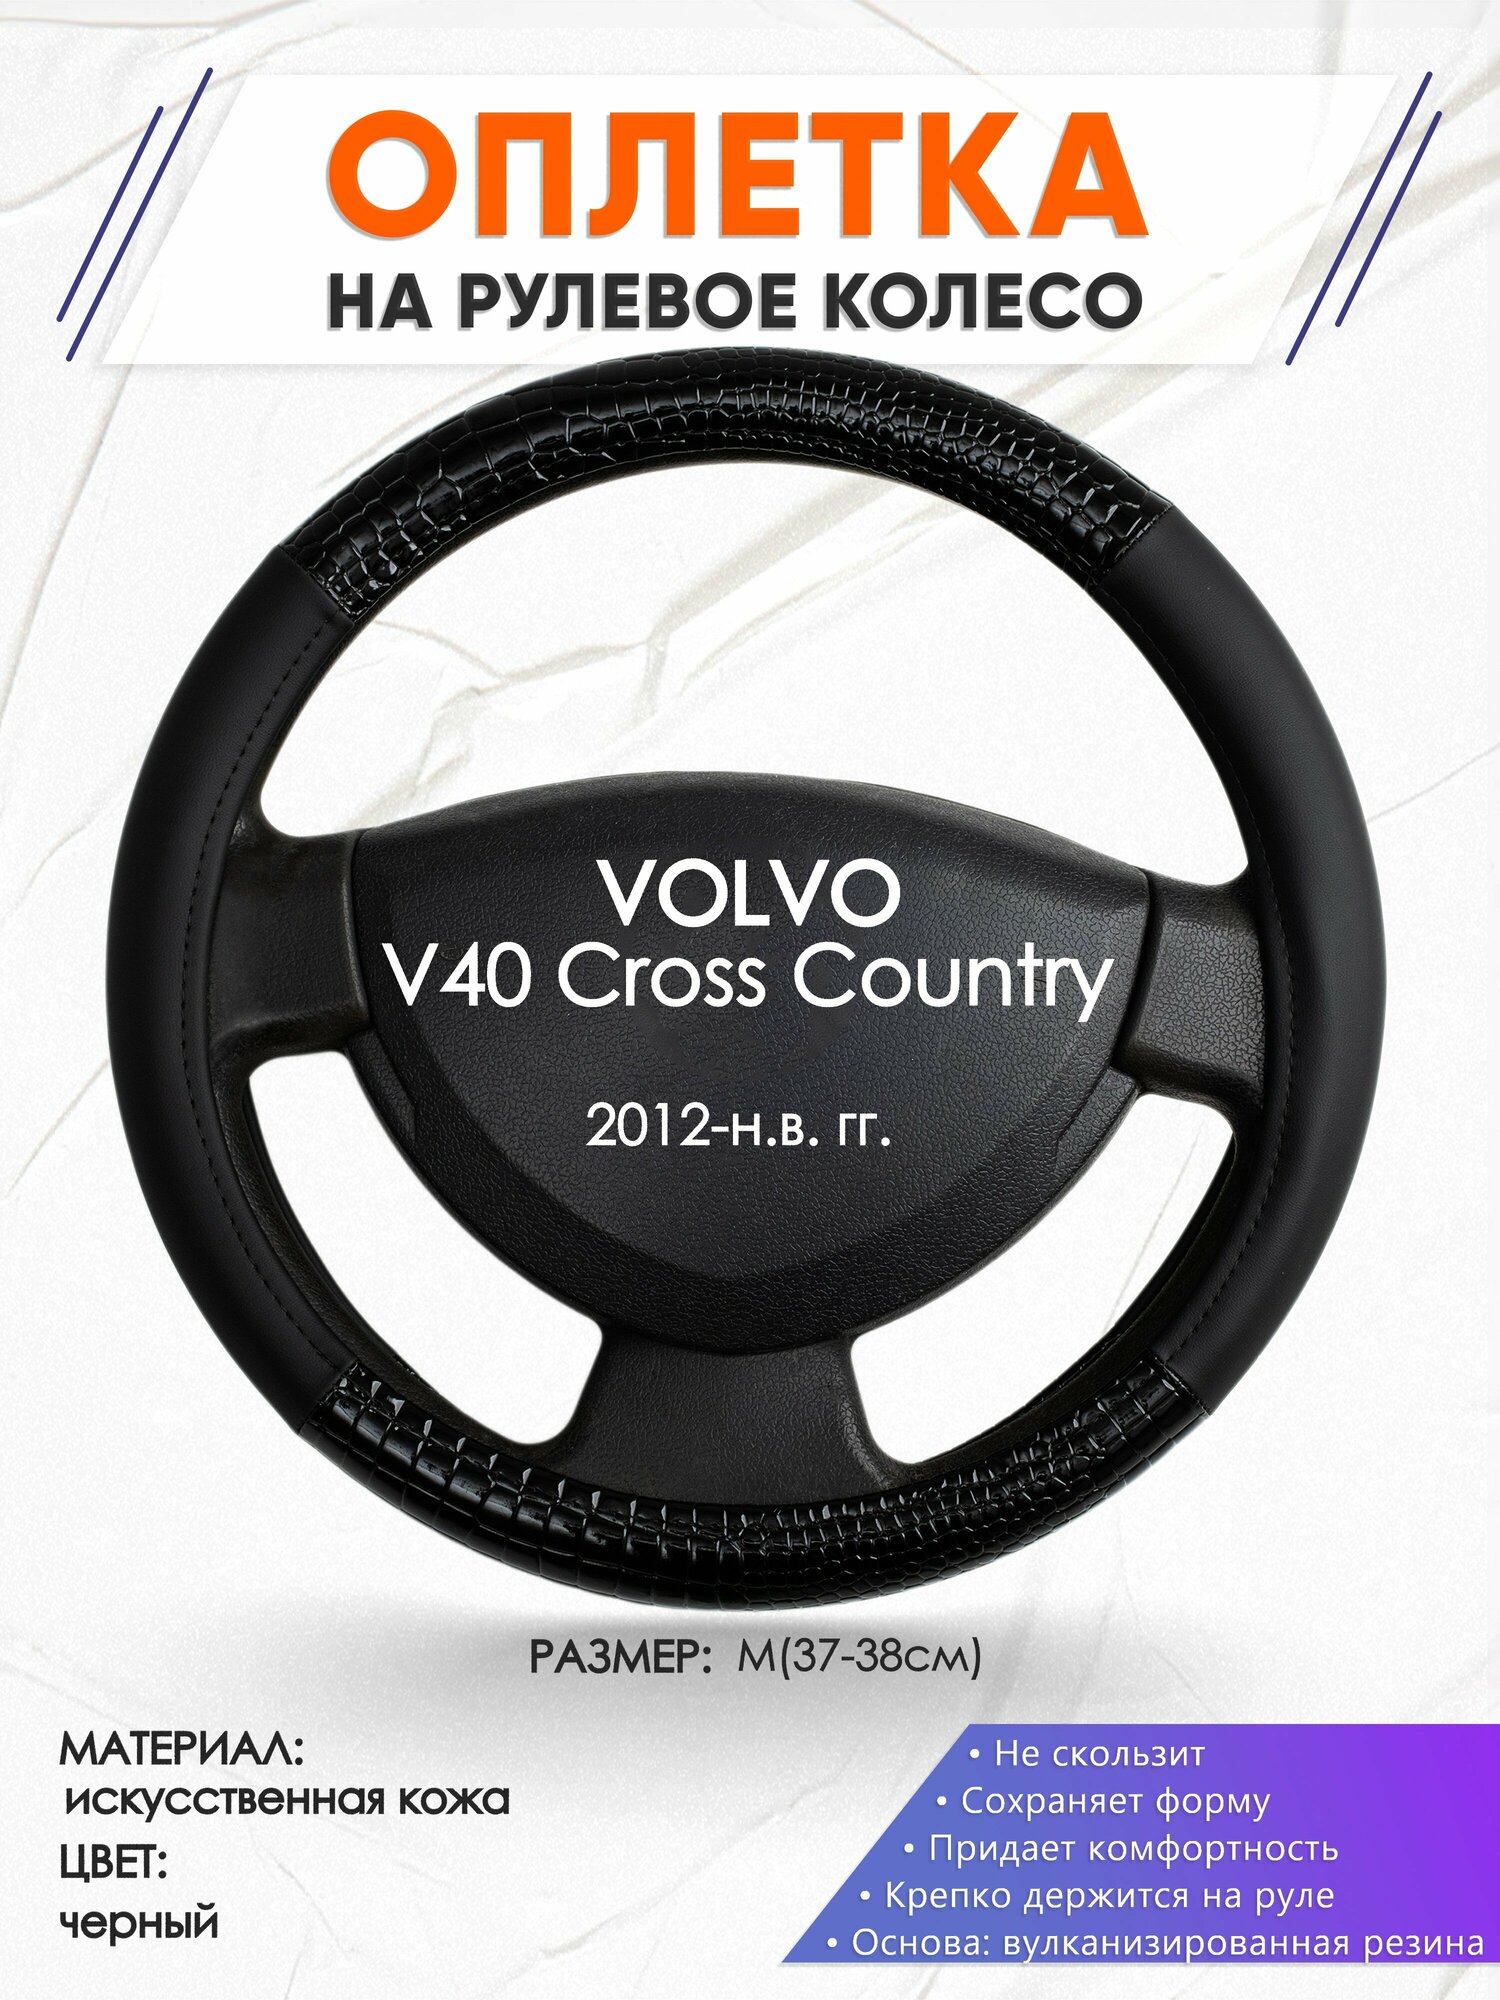 Оплетка наруль для VOLVO V40 Cross Country(Вольво в70) 2012-н. в. годов выпуска, размер M(37-38см), Искусственная кожа 83